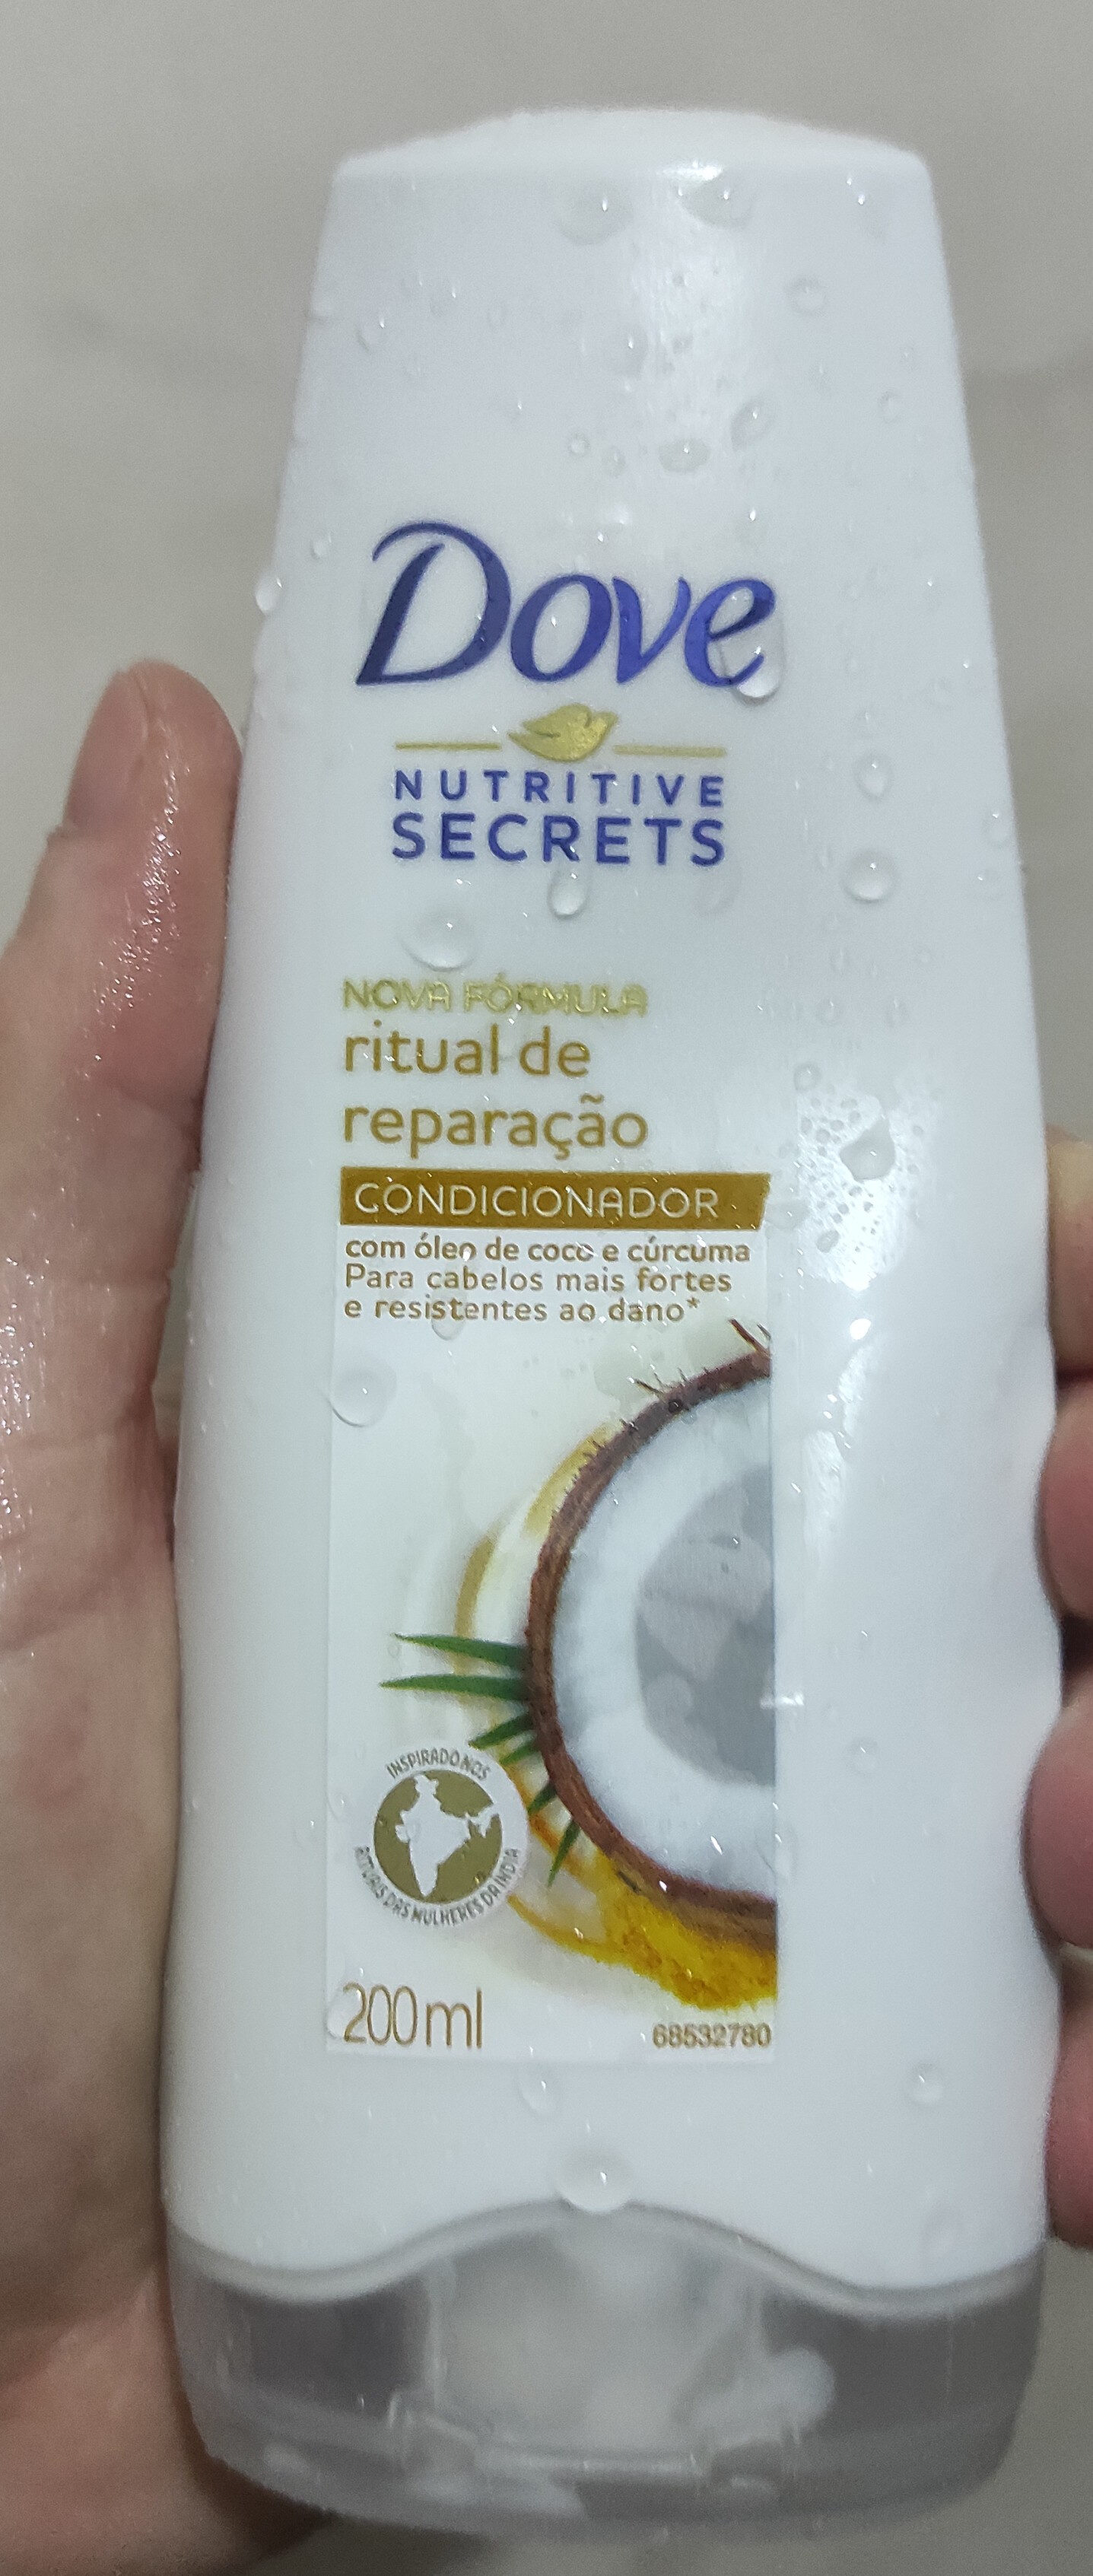 Shampoo Dove Ritual de Reparação - Продукт - pt